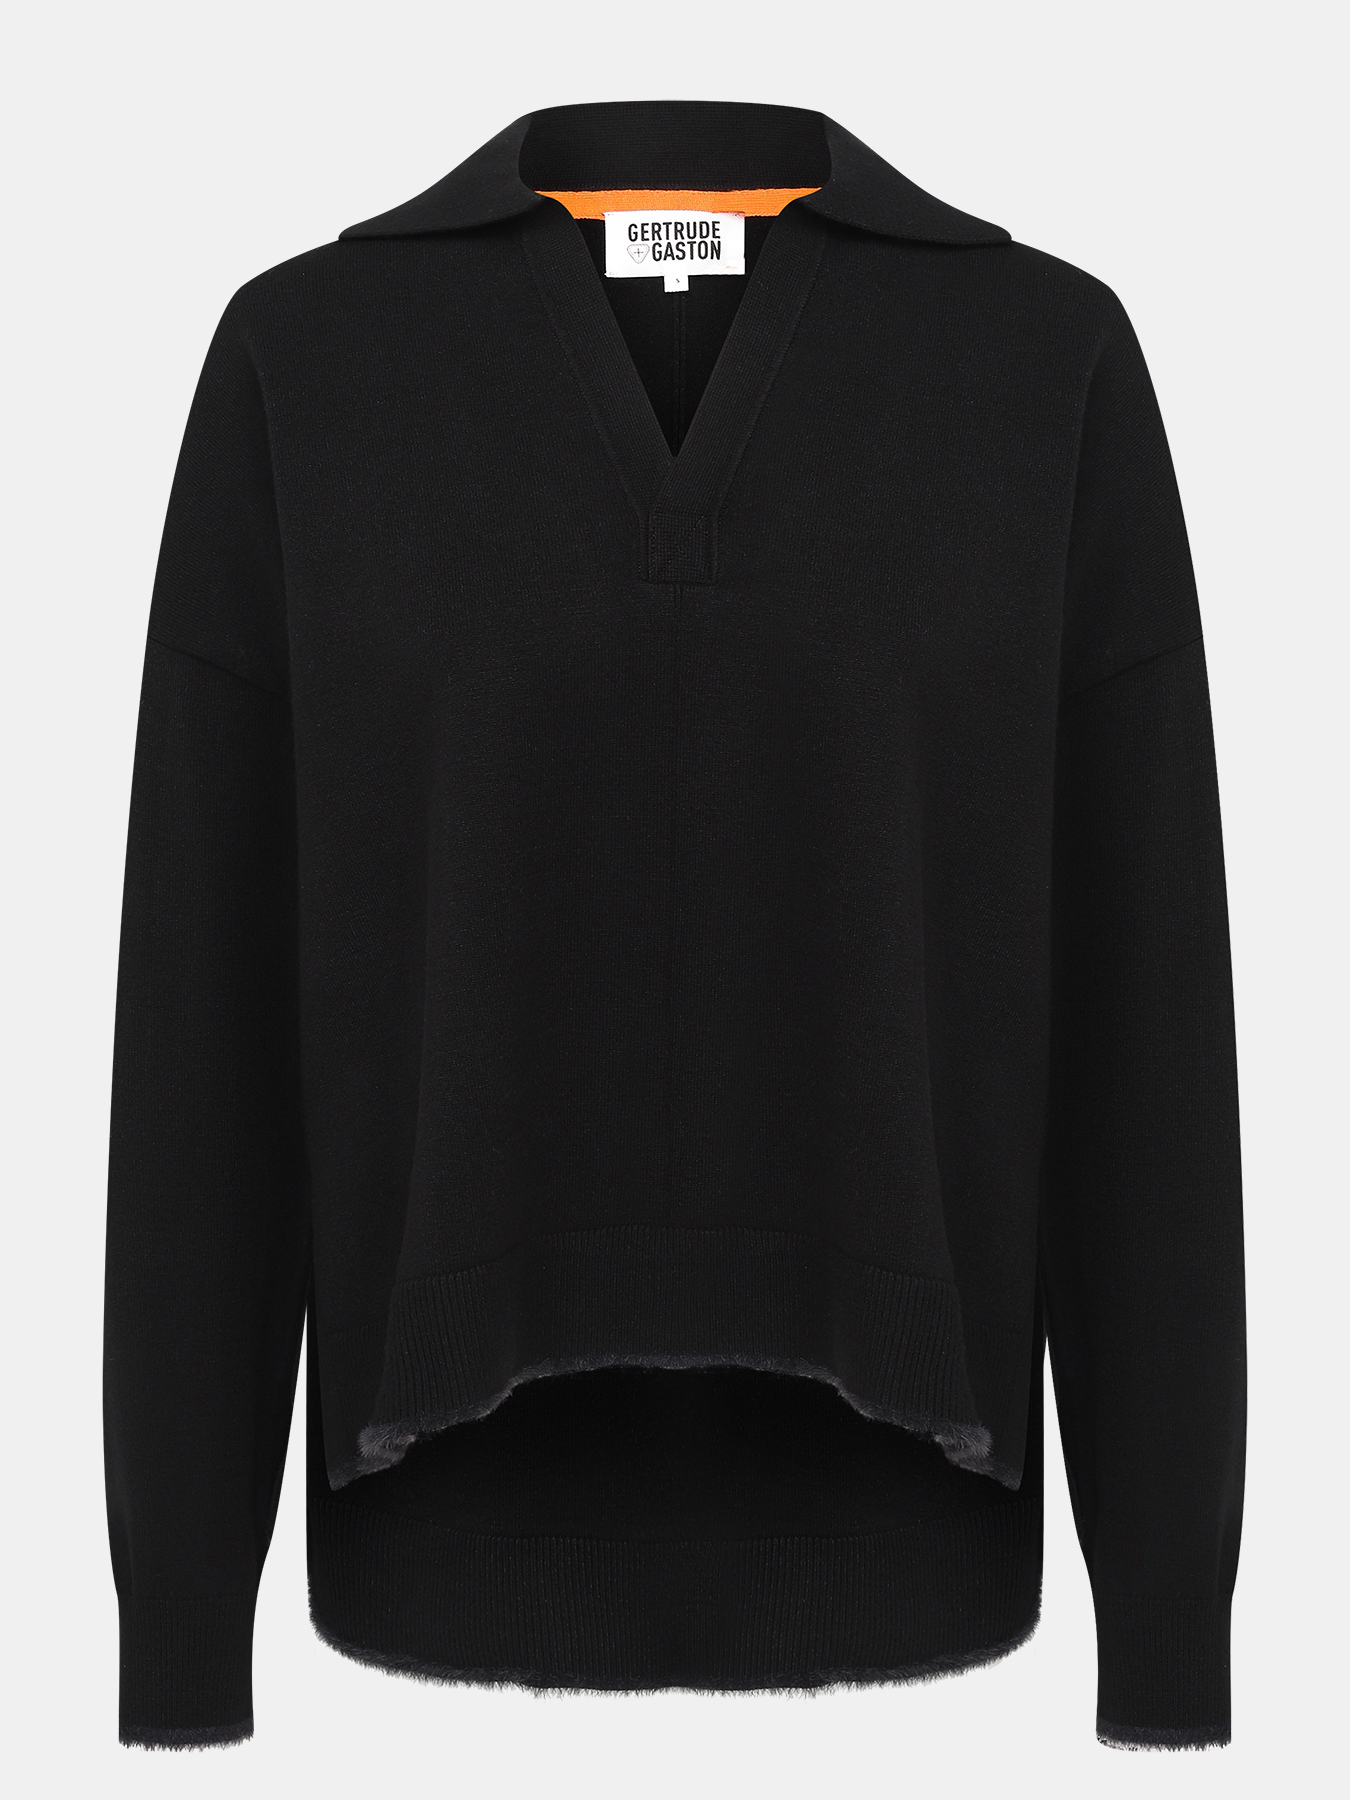 Пуловер Gertrude+Gaston 429302-042, цвет черный, размер 42-44